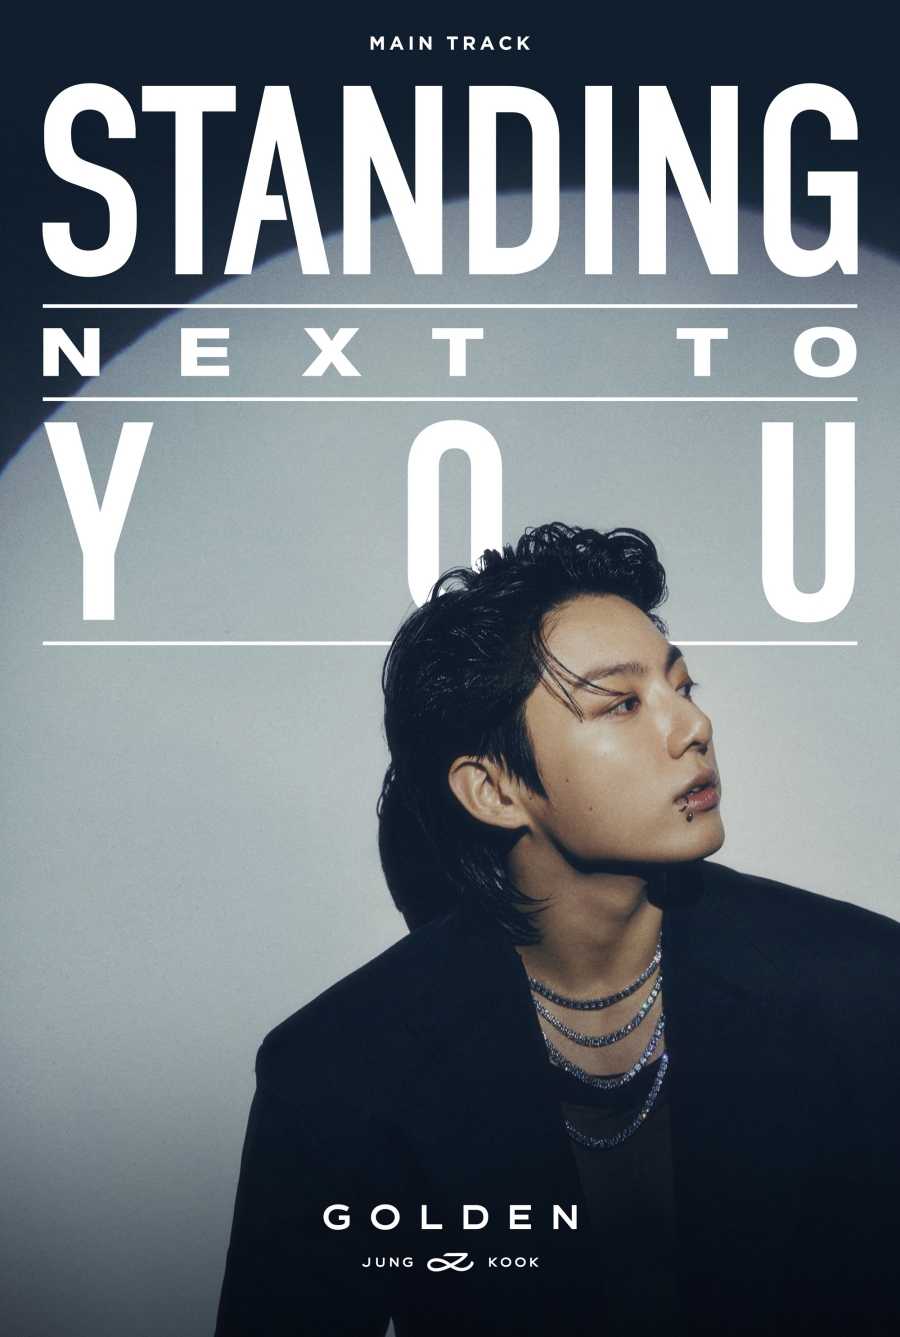 BTS 정국, 신곡 'Standing Next to You' 트랙포스터 공개…짙은 남성미